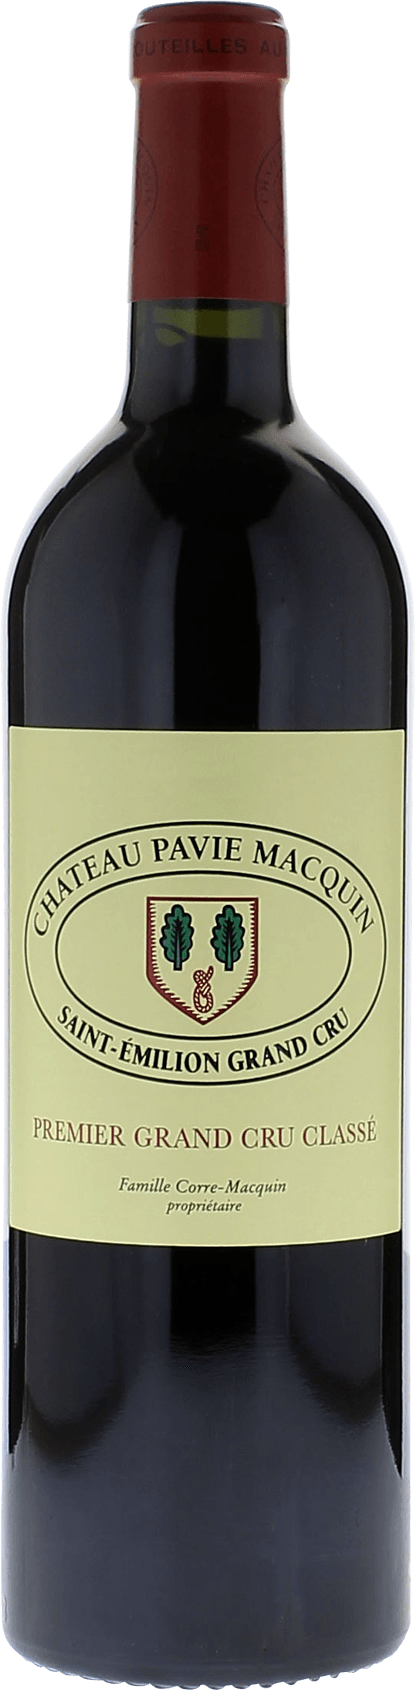 Pavie macquin 1996 1er Grand cru B class Saint-Emilion, Bordeaux rouge